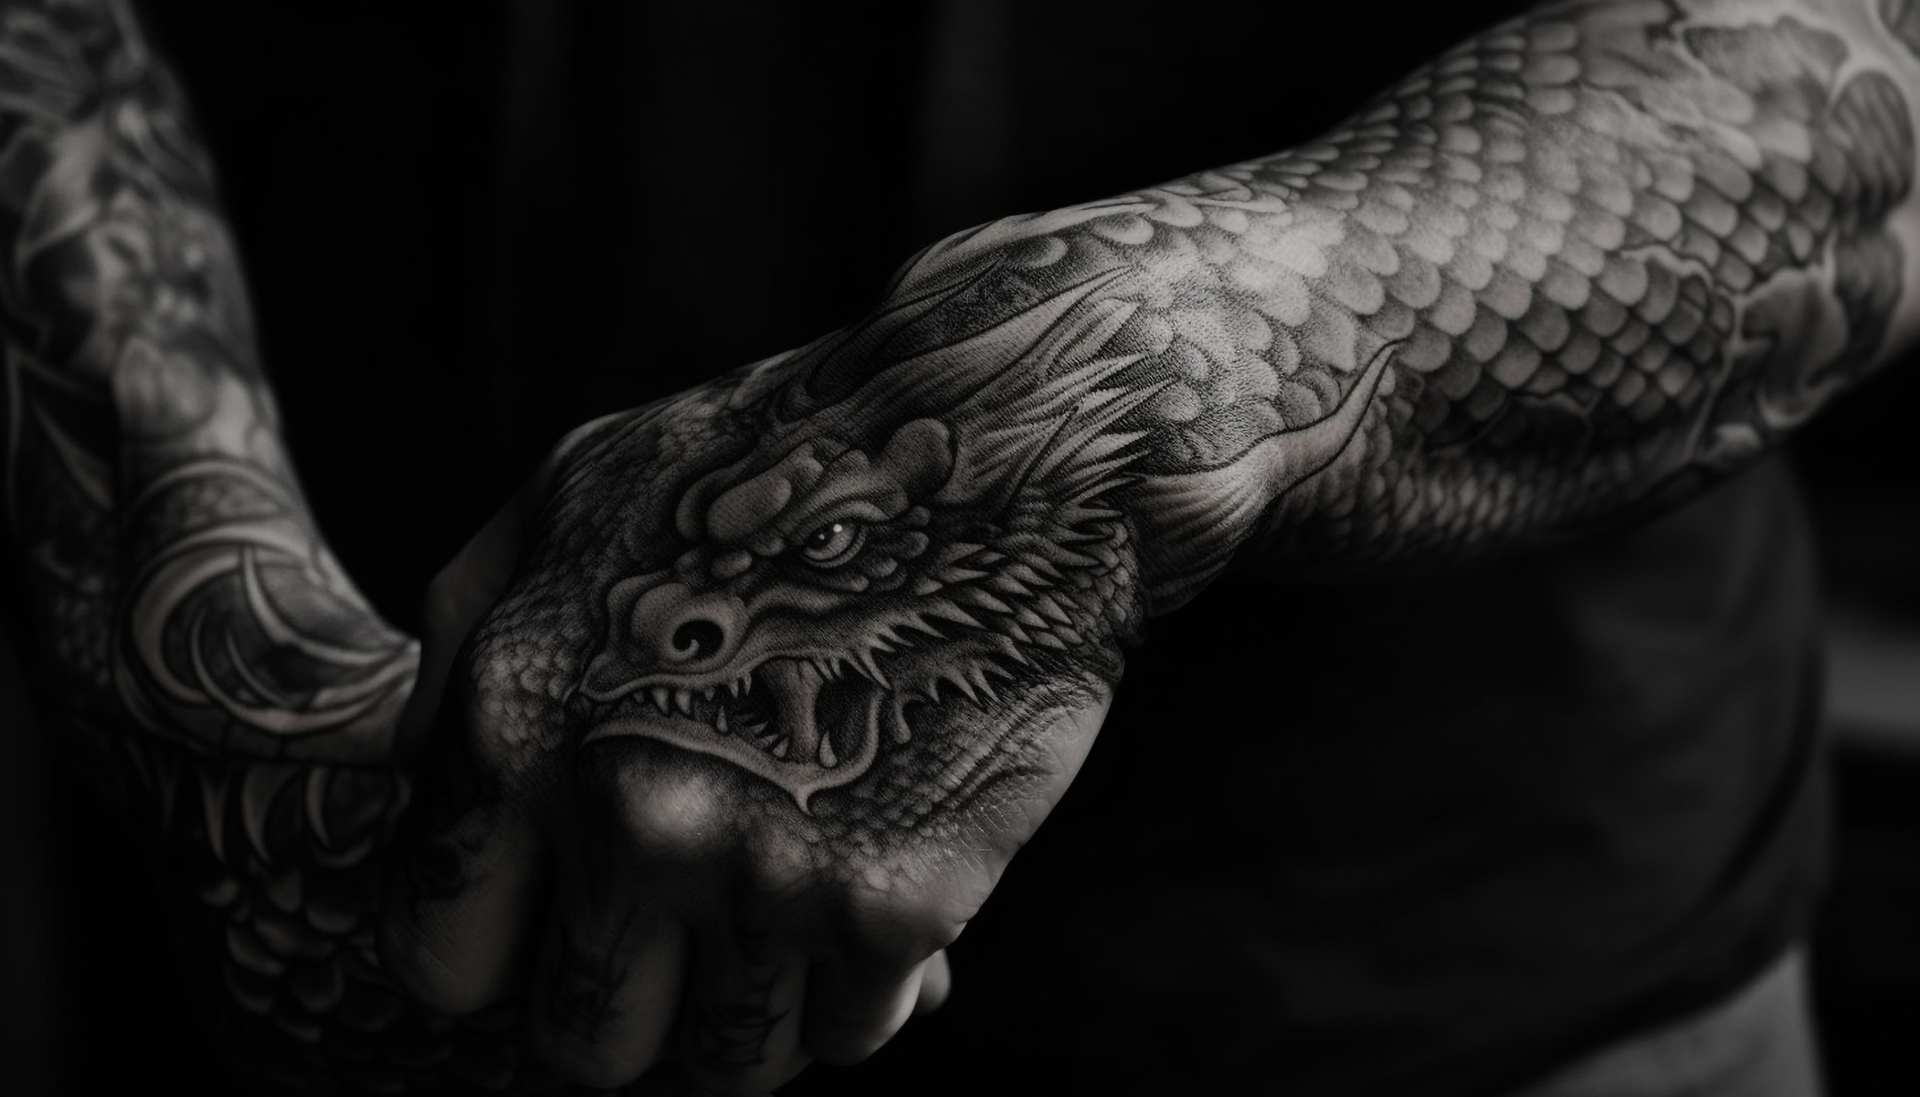 Na tym obrazku możemy zobaczyć imponujący tatuaż smoka umieszczony na dłoni, który przyciąga wzrok swoją precyzją i detalami. Ten wyjątkowy tatuaż smoka na dłoni jest nie tylko artystycznym wyrazem, ale także odzwierciedla siłę, mądrość i ochronę, które smok symbolizuje. Wykonany w czarnych barwach, ten tatuaż smoka na dłoni tworzy efektowną kompozycję, która uosabia moc i charakter właściciela